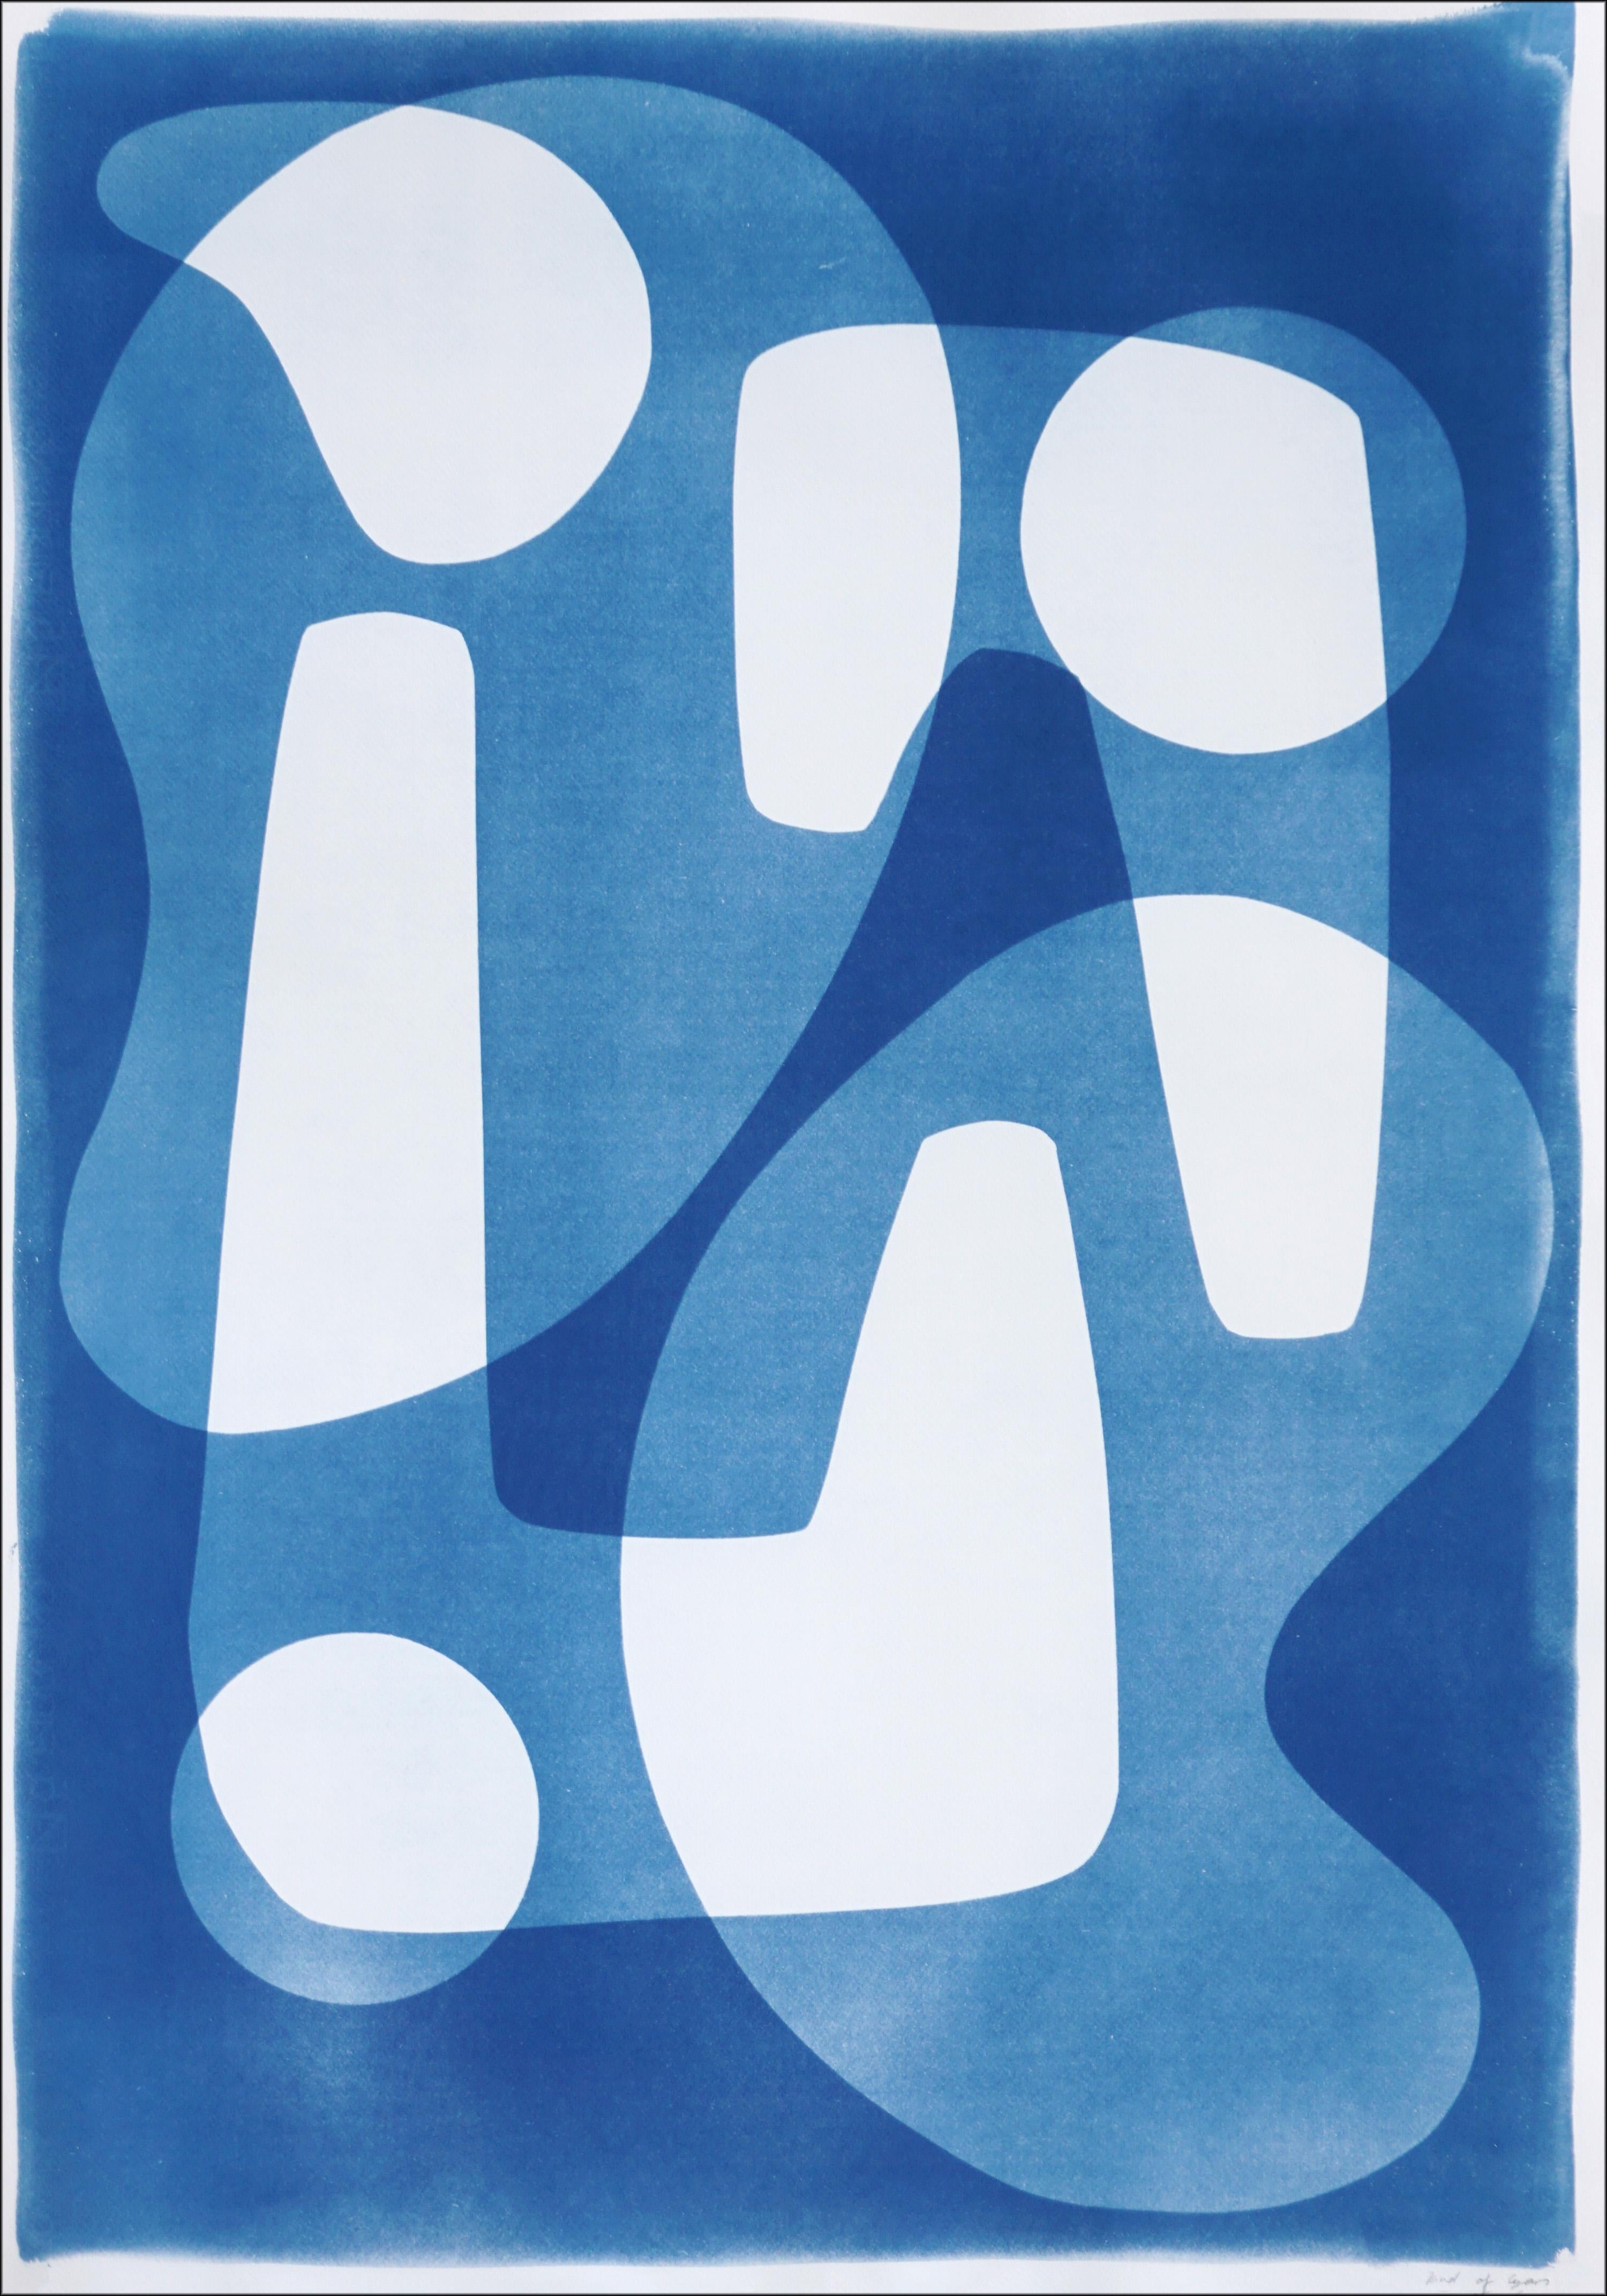 Kind of Cyan Abstract Photograph – Weiße und blaue Jetsons-Stil-Formen, handgefertigte Cyanotypie, einzigartige, moderne Formen